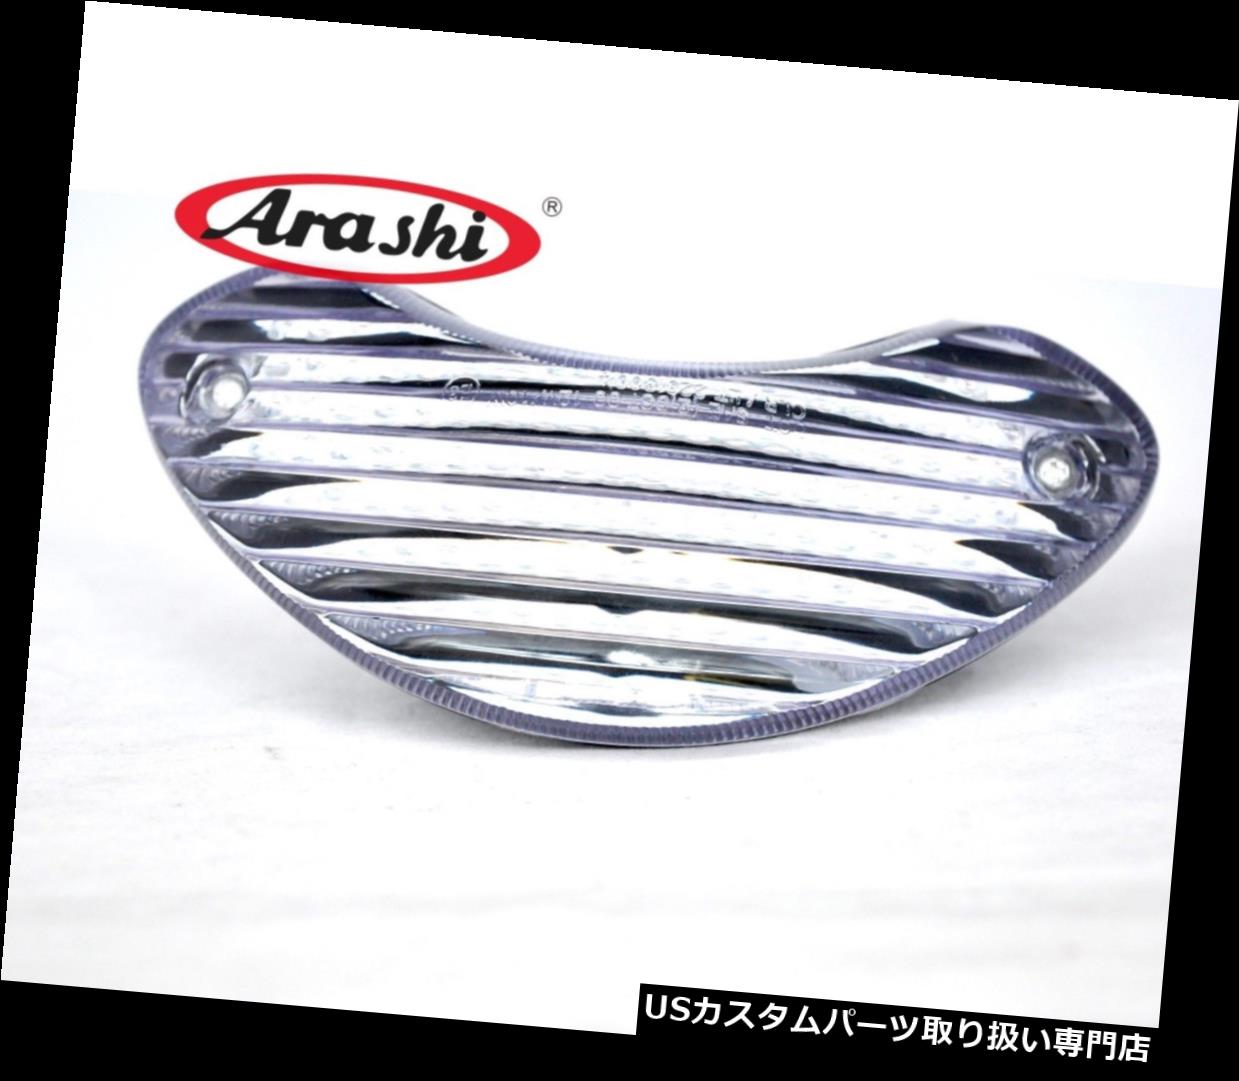 Fit For SUZUKI SV650 SV 650 1999-2003 LED Turn Signal Light Brake Rear Tail LighカテゴリUSテールライト状態新品メーカー車種発送詳細送料一律 1000円（※北海道、沖縄、離島は省く）商品詳細輸入商品の為、英語表記となります。 Condition: New Brand: Arashi Bundle Listing: Yes Product Type: Rear & Brake Light Assemblies Technology: LED Manufacturer Part Number: TZS-030-INT UPC: Does not apply※以下の注意事項をご理解頂いた上で、ご入札下さい※■海外輸入品の為、NC,NRでお願い致します。■フィッテングや車検対応の有無については、基本的に画像と説明文よりお客様の方にてご判断をお願いしております。■USパーツは国内の純正パーツを取り外した後、接続コネクタが必ずしも一致するとは限らず、加工が必要な場合もございます。■輸入品につき、商品に小傷やスレなどがある場合がございます。■大型商品に関しましては、配送会社の規定により個人宅への配送が困難な場合がございます。その場合は、会社や倉庫、最寄りの営業所での受け取りをお願いする場合がございます。■大型商品に関しましては、輸入消費税が課税される場合もございます。その場合はお客様側で輸入業者へ輸入消費税のお支払いのご負担をお願いする場合がございます。■取付並びにサポートは行なっておりません。また作業時間や難易度は個々の技量に左右されますのでお答え出来かねます。■取扱い説明書などは基本的に同封されておりません。■商品説明文中に英語にて”保障”に関する記載があっても適応はされませんので、ご理解ください。■商品の発送前に事前に念入りな検品を行っておりますが、運送状況による破損等がある場合がございますので、商品到着次第、速やかに商品の確認をお願いします。■到着より7日以内のみ保証対象とします。ただし、取り付け後は、保証対象外となります。■商品の配送方法や日時の指定頂けません。■お届けまでには、2〜3週間程頂いております。ただし、通関処理や天候次第で多少遅れが発生する場合もあります。■商品落札後のお客様のご都合によるキャンセルはお断りしておりますが、落札金額の30％の手数料をいただいた場合のみお受けする場合があります。■他にもUSパーツを多数出品させて頂いておりますので、ご覧頂けたらと思います。■USパーツの輸入代行も行っておりますので、ショップに掲載されていない商品でもお探しする事が可能です!!お気軽にお問い合わせ下さい。&nbsp;